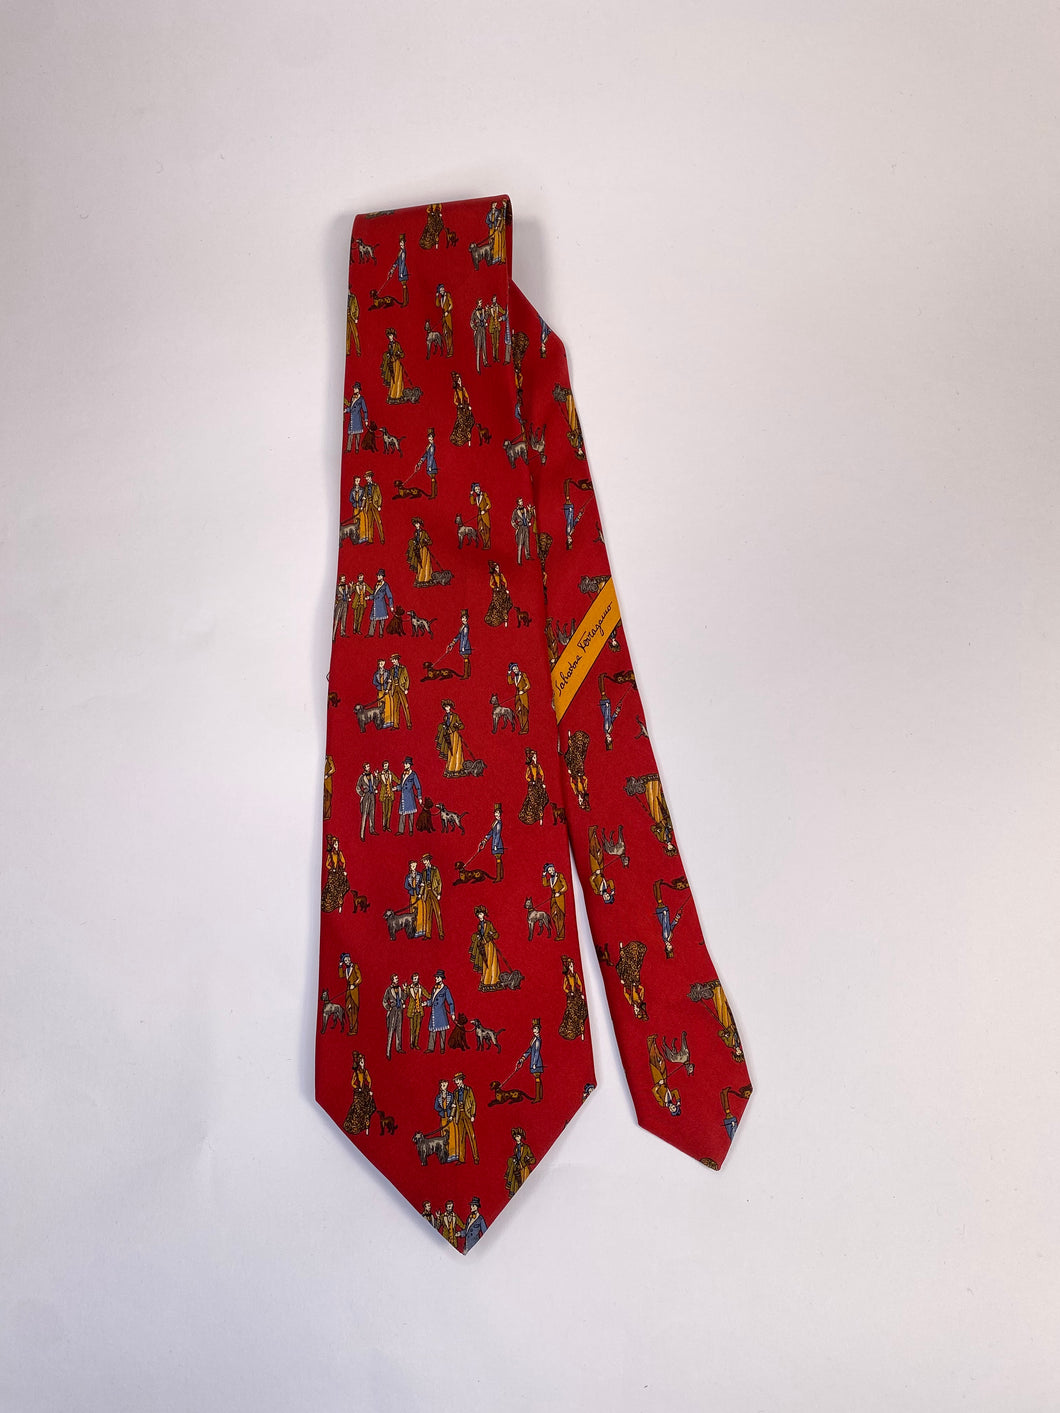 Salvatore Ferragamo necktie red